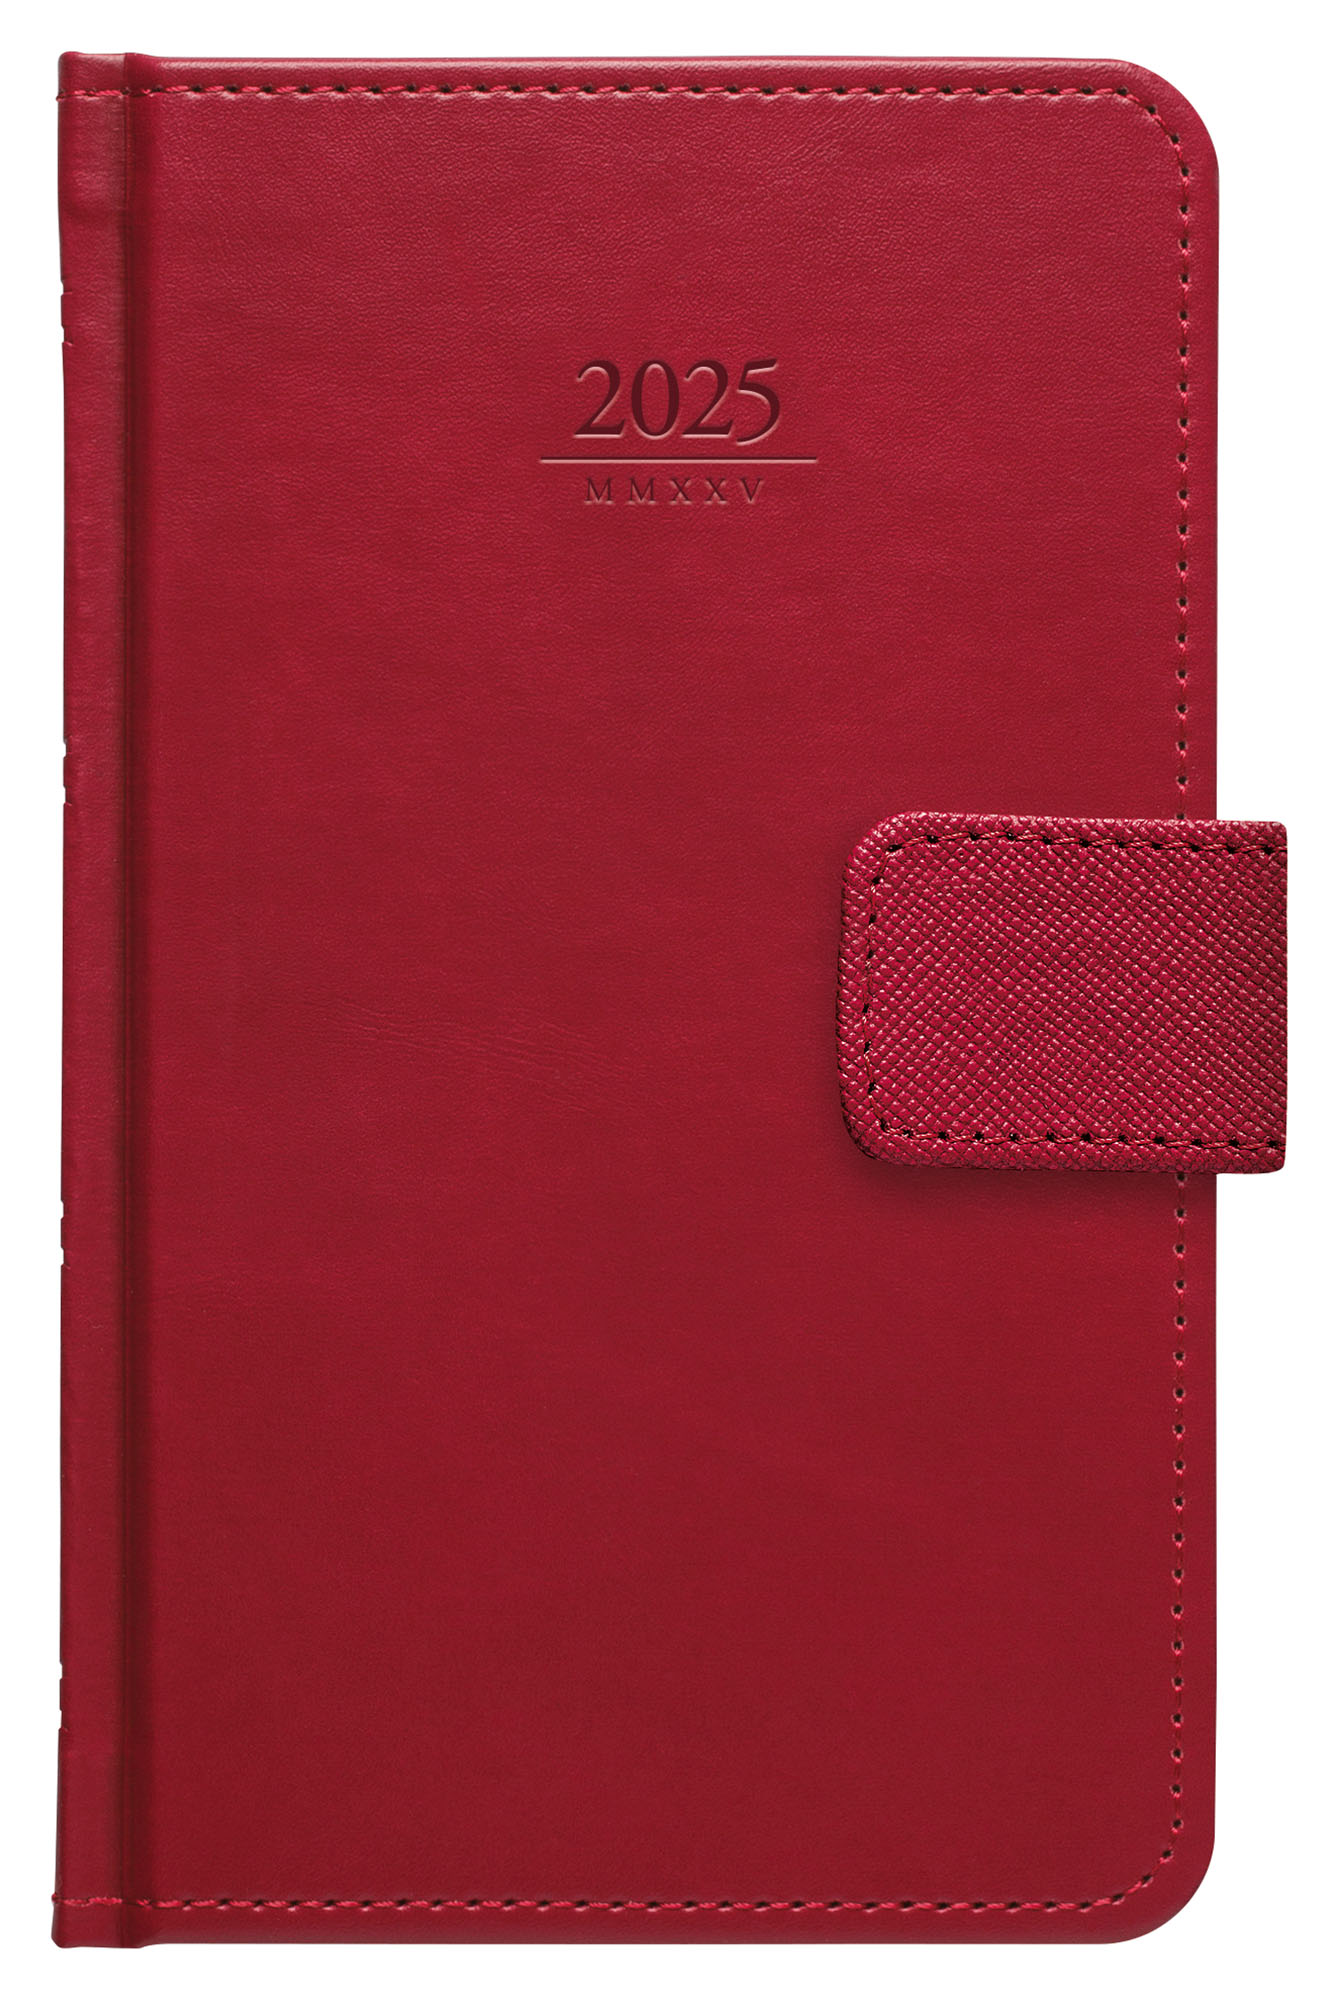 Kapesní diář Gemma s poutkem 2025, 9x15 cm - červená